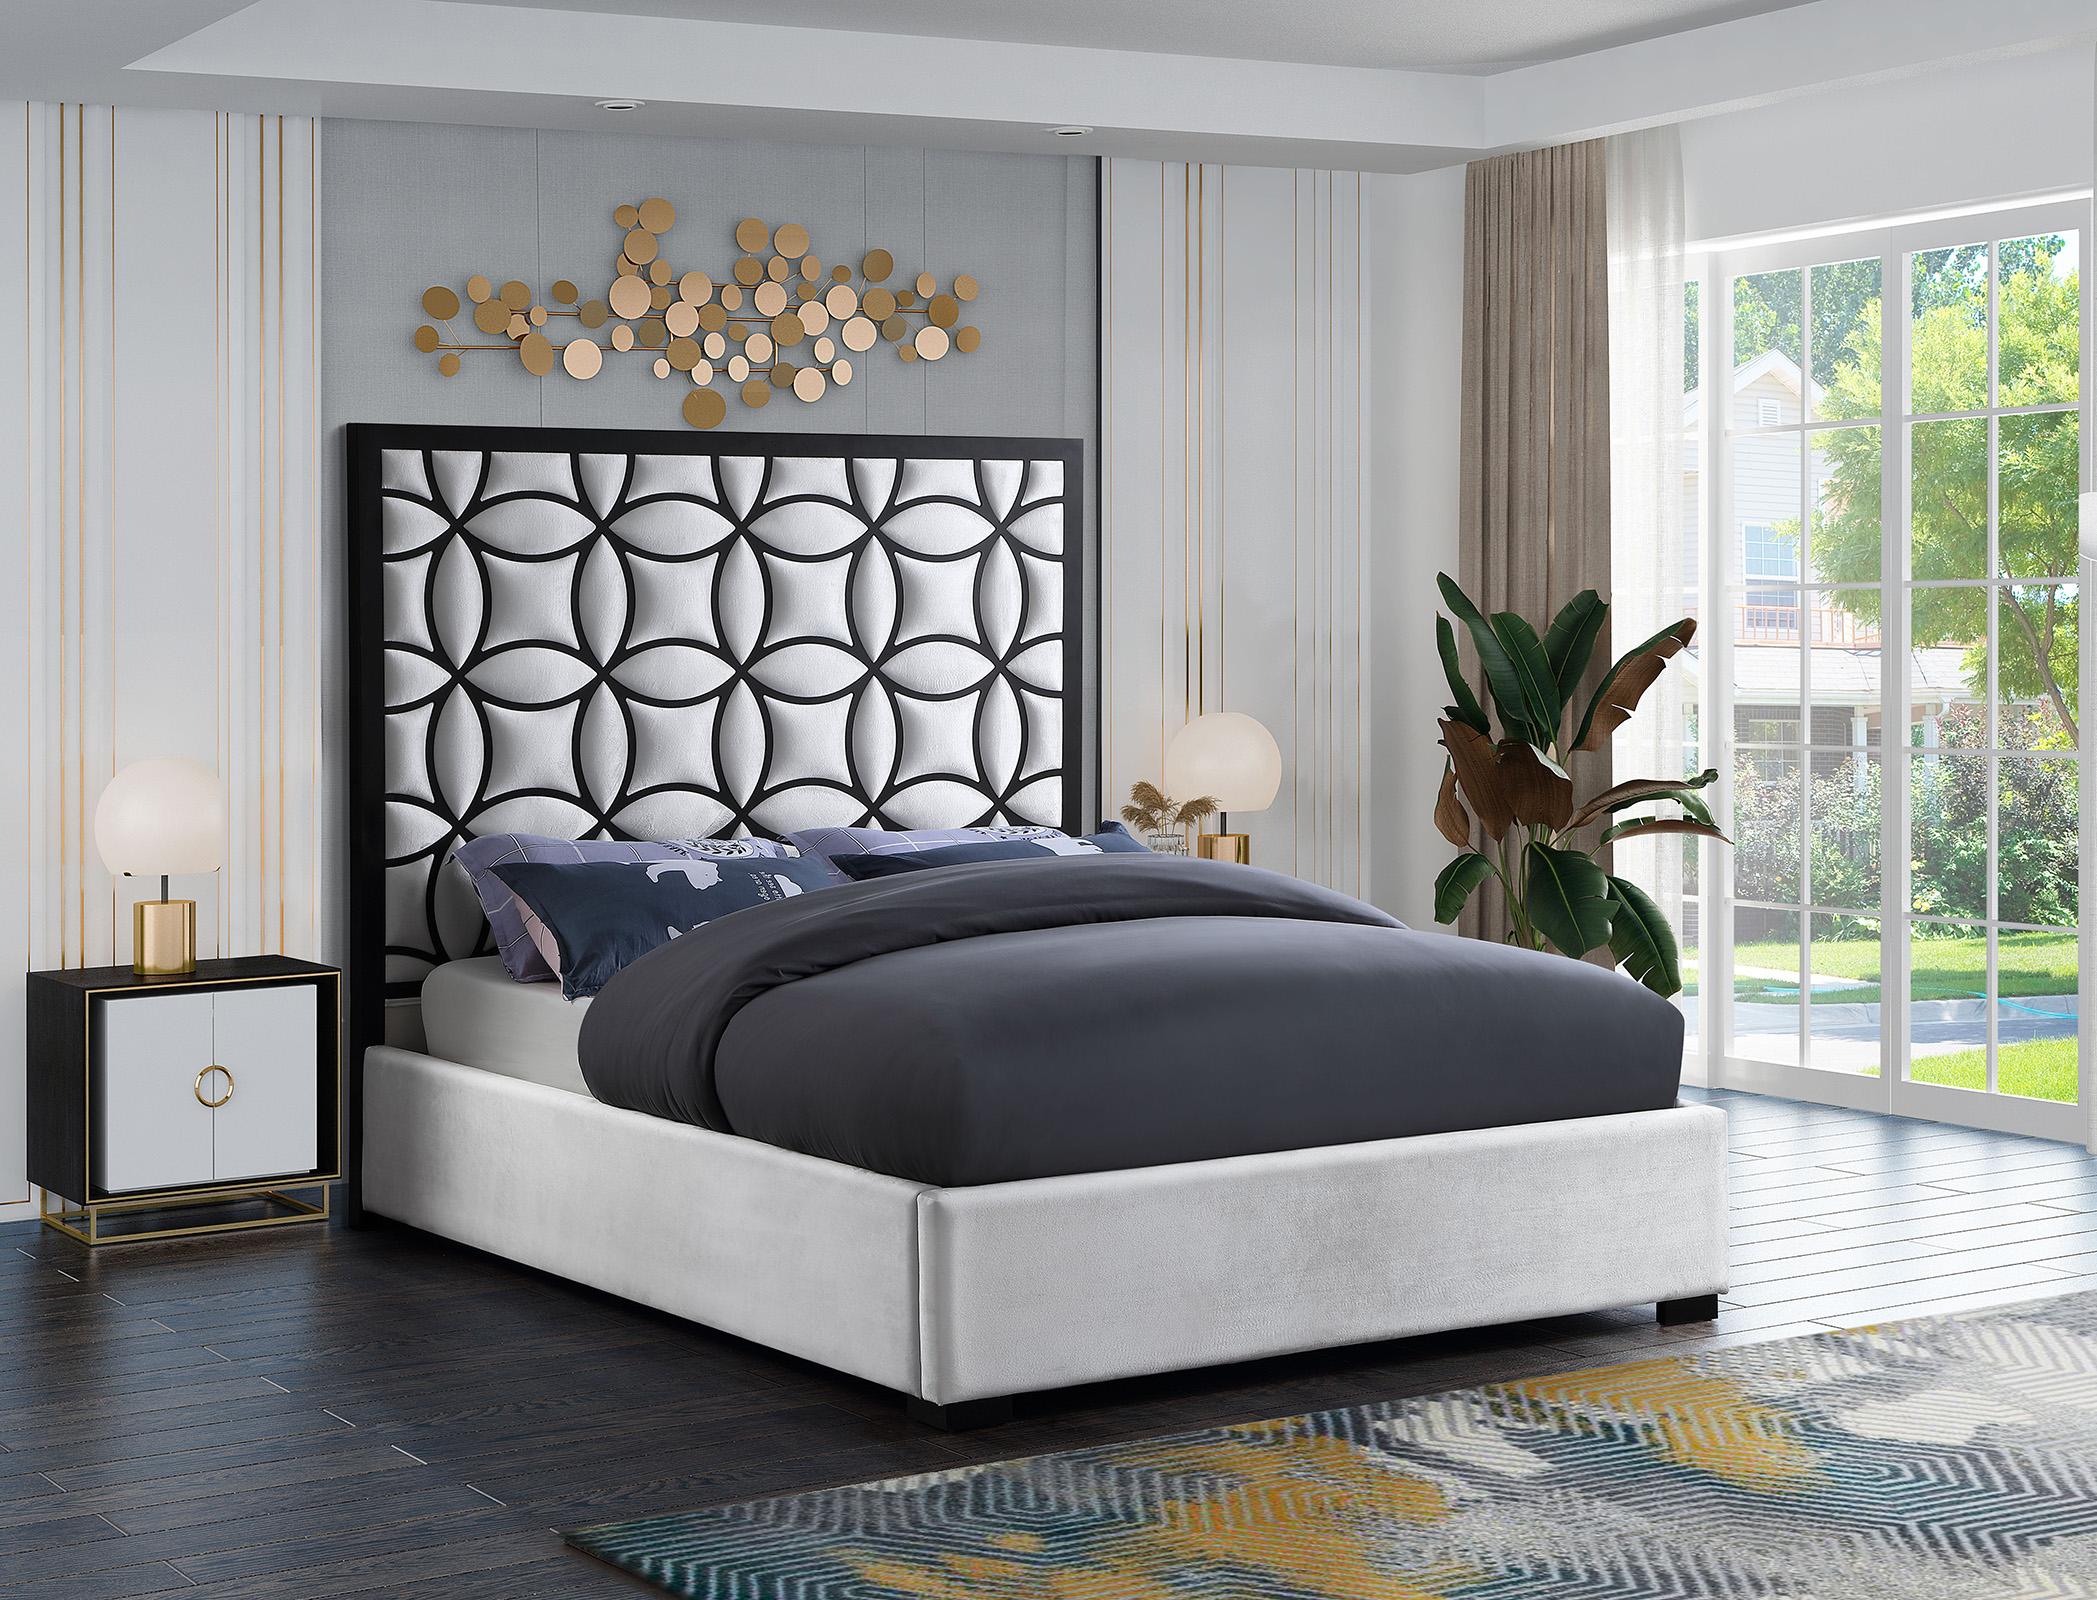 

    
TajWhite-K Meridian Furniture Platform Bed
